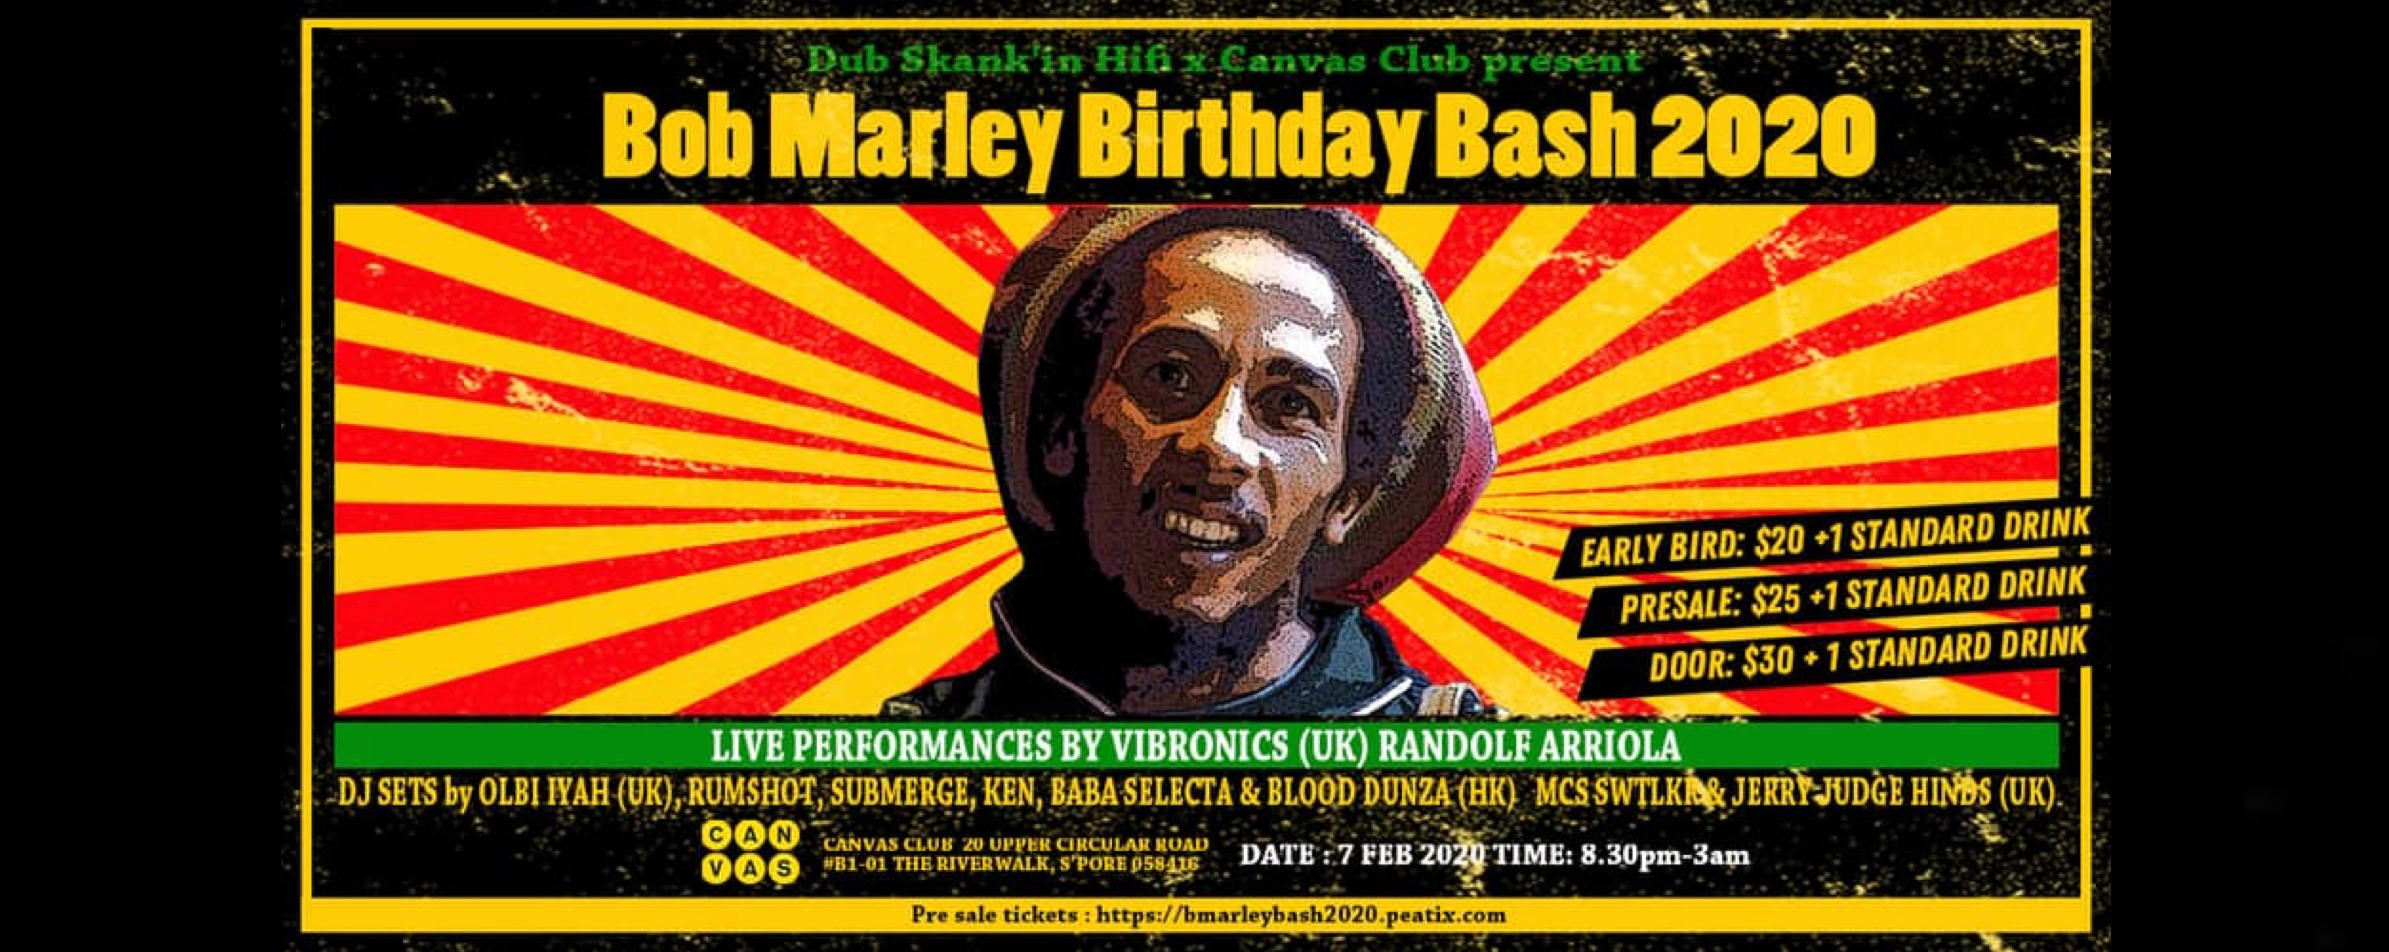 Bob Marley Birthday Bash 2020